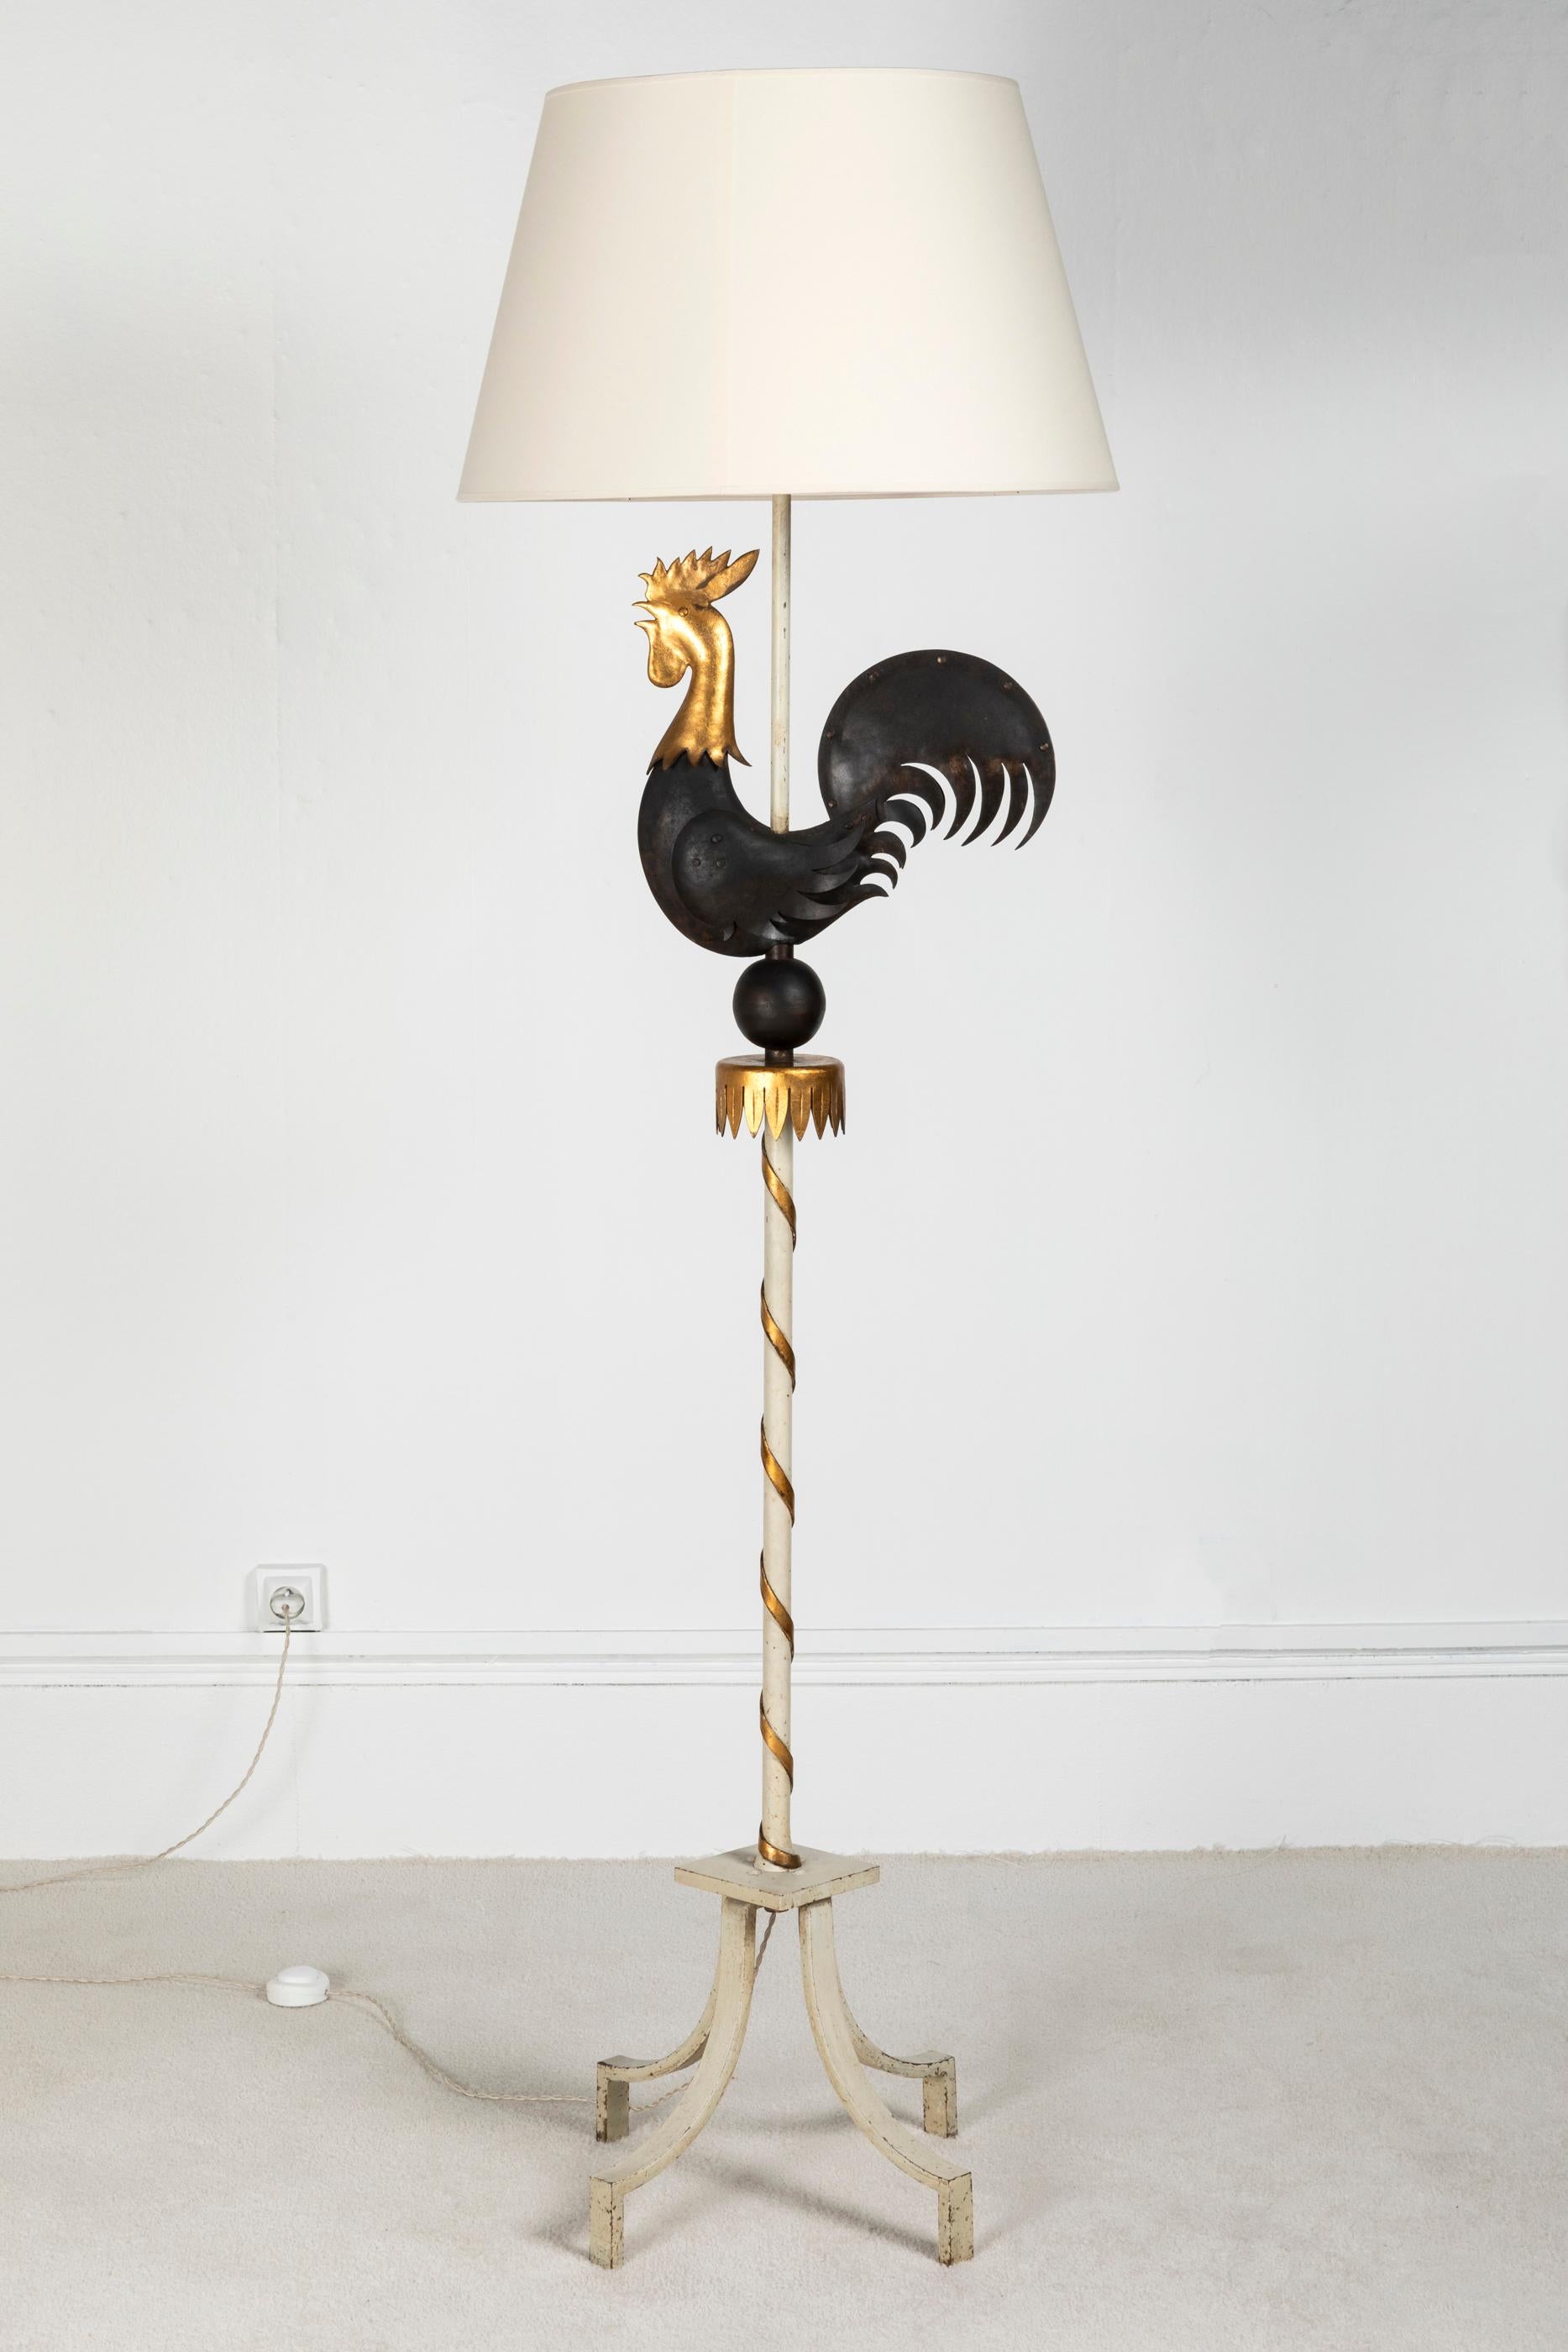 Un coq patiné en fer forgé noir et doré, le pied de lampe est laqué en blanc avec une spirale dorée autour. Cette lampe est dans le style et rappelle le célèbre ferronnier d'art français Gilbert Poillerat.